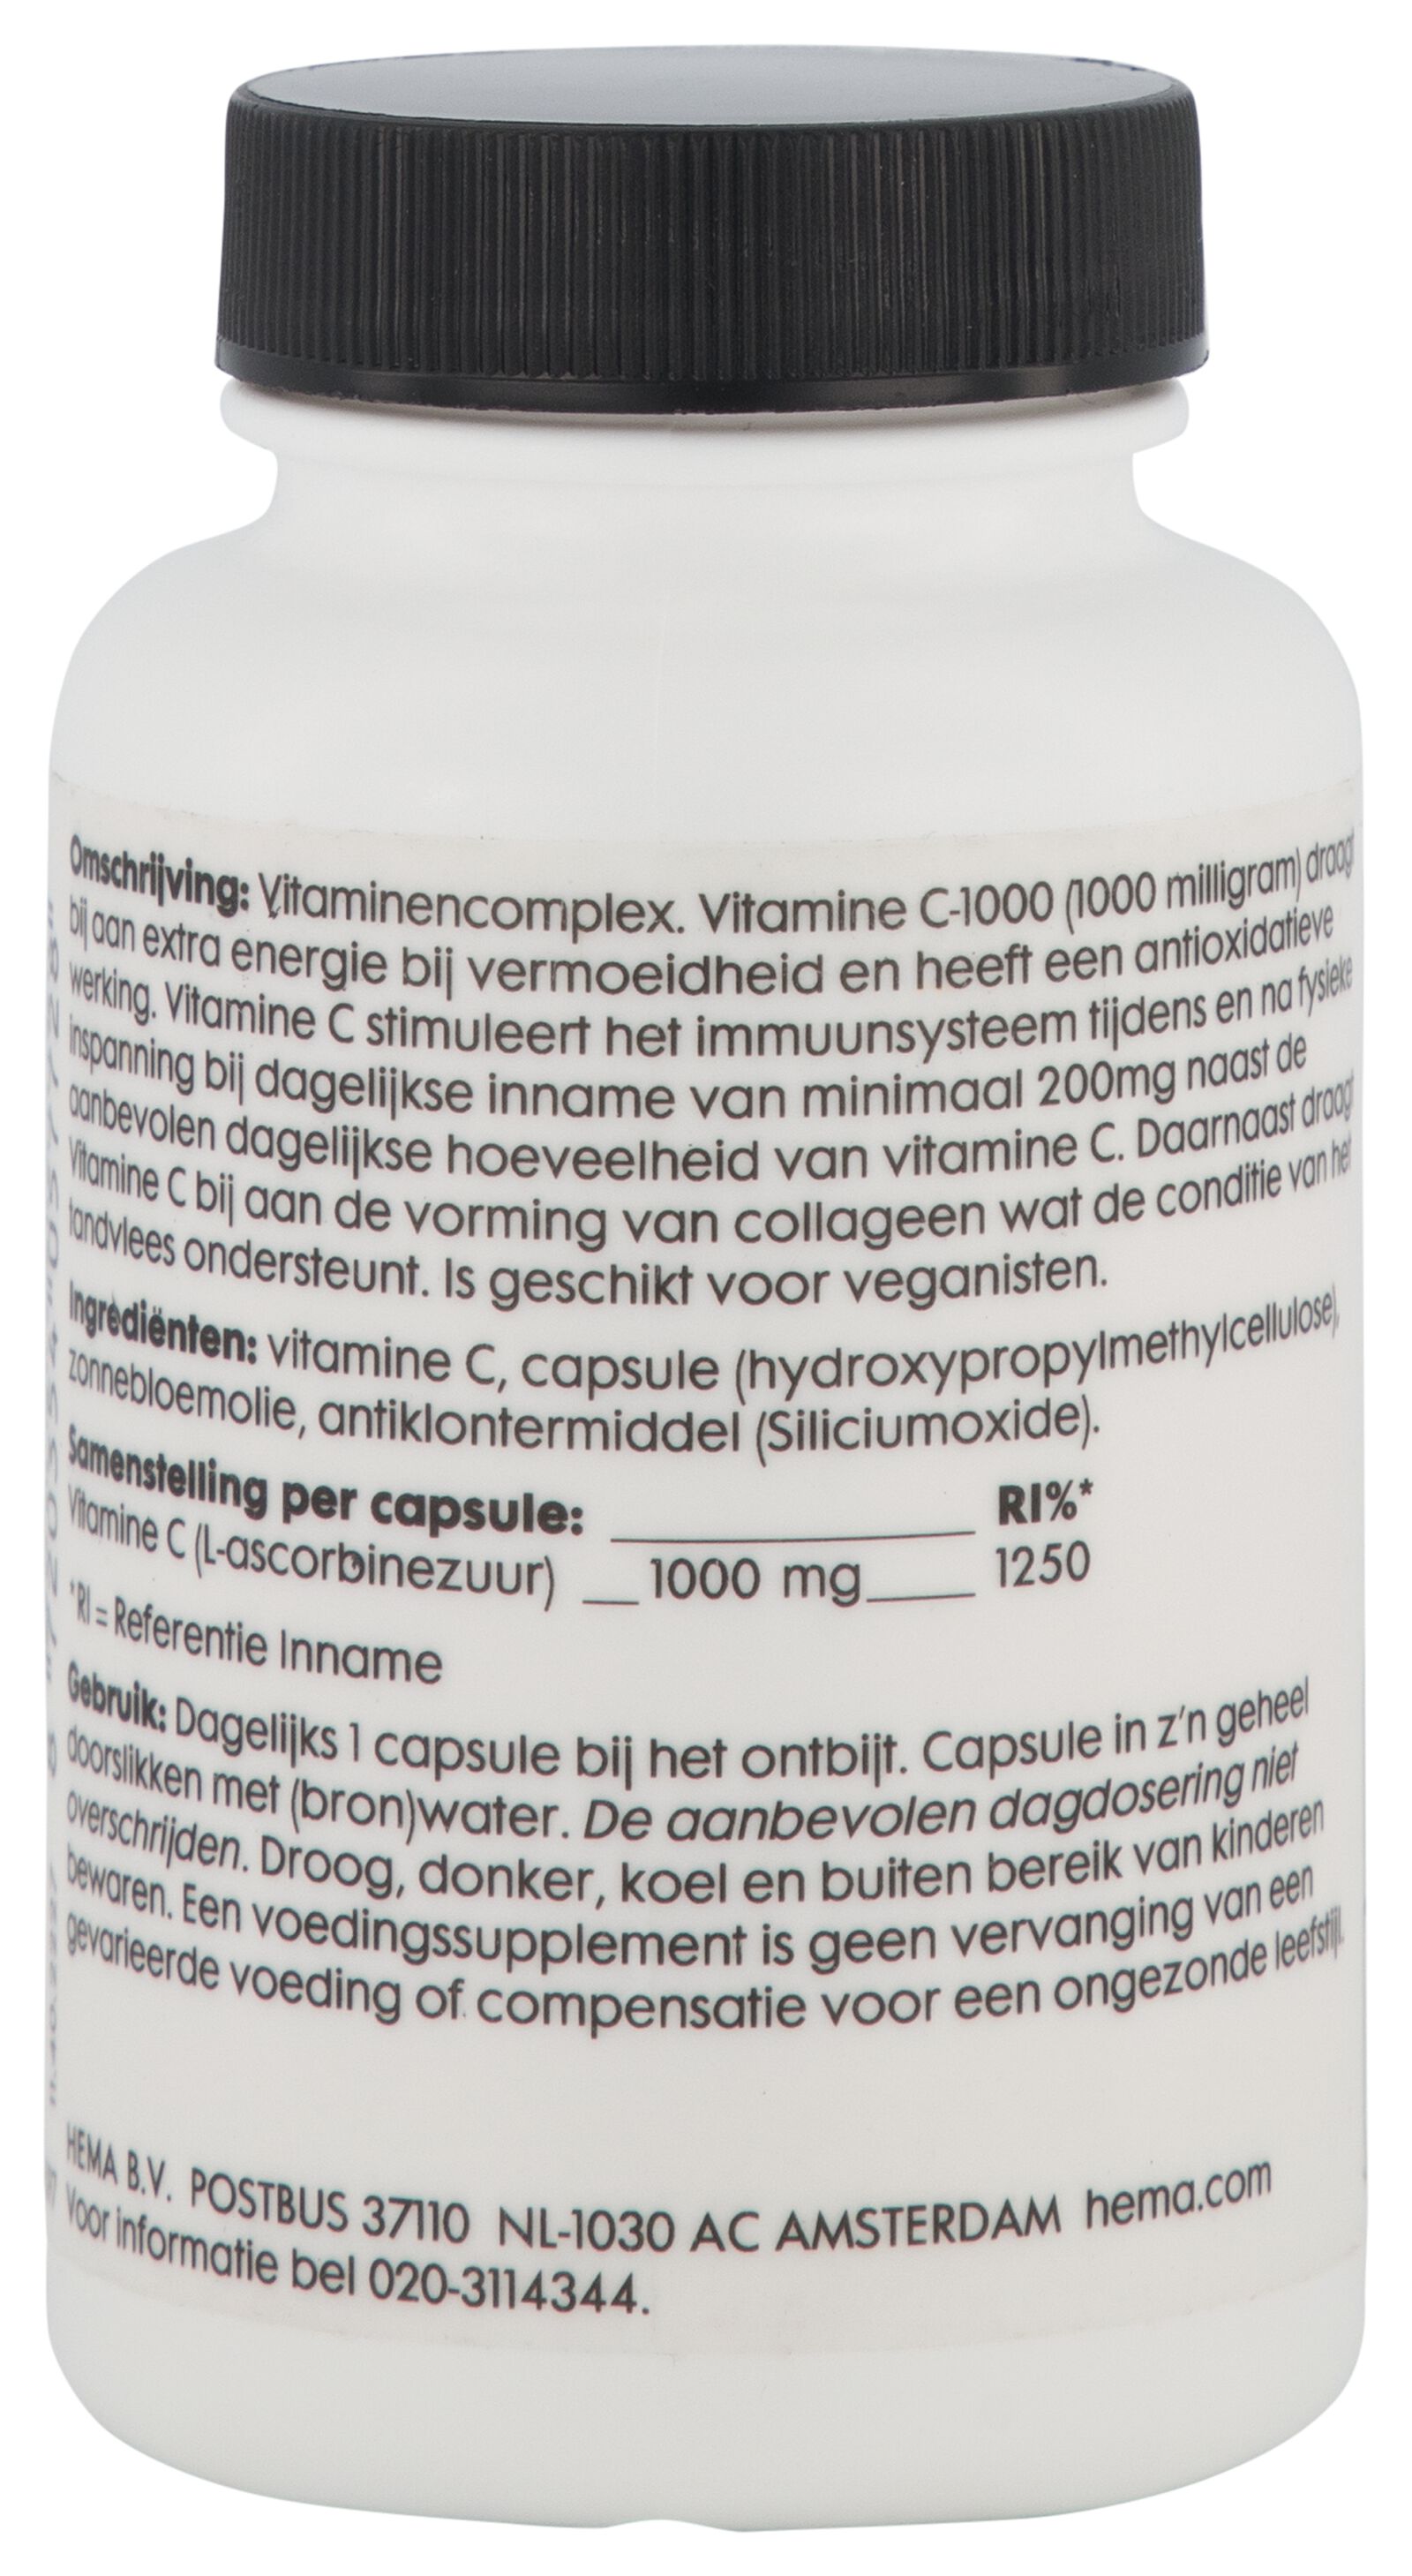 vitamine C-1000 mg hoog gedoseerd - 60 stuks - 11402227 - HEMA